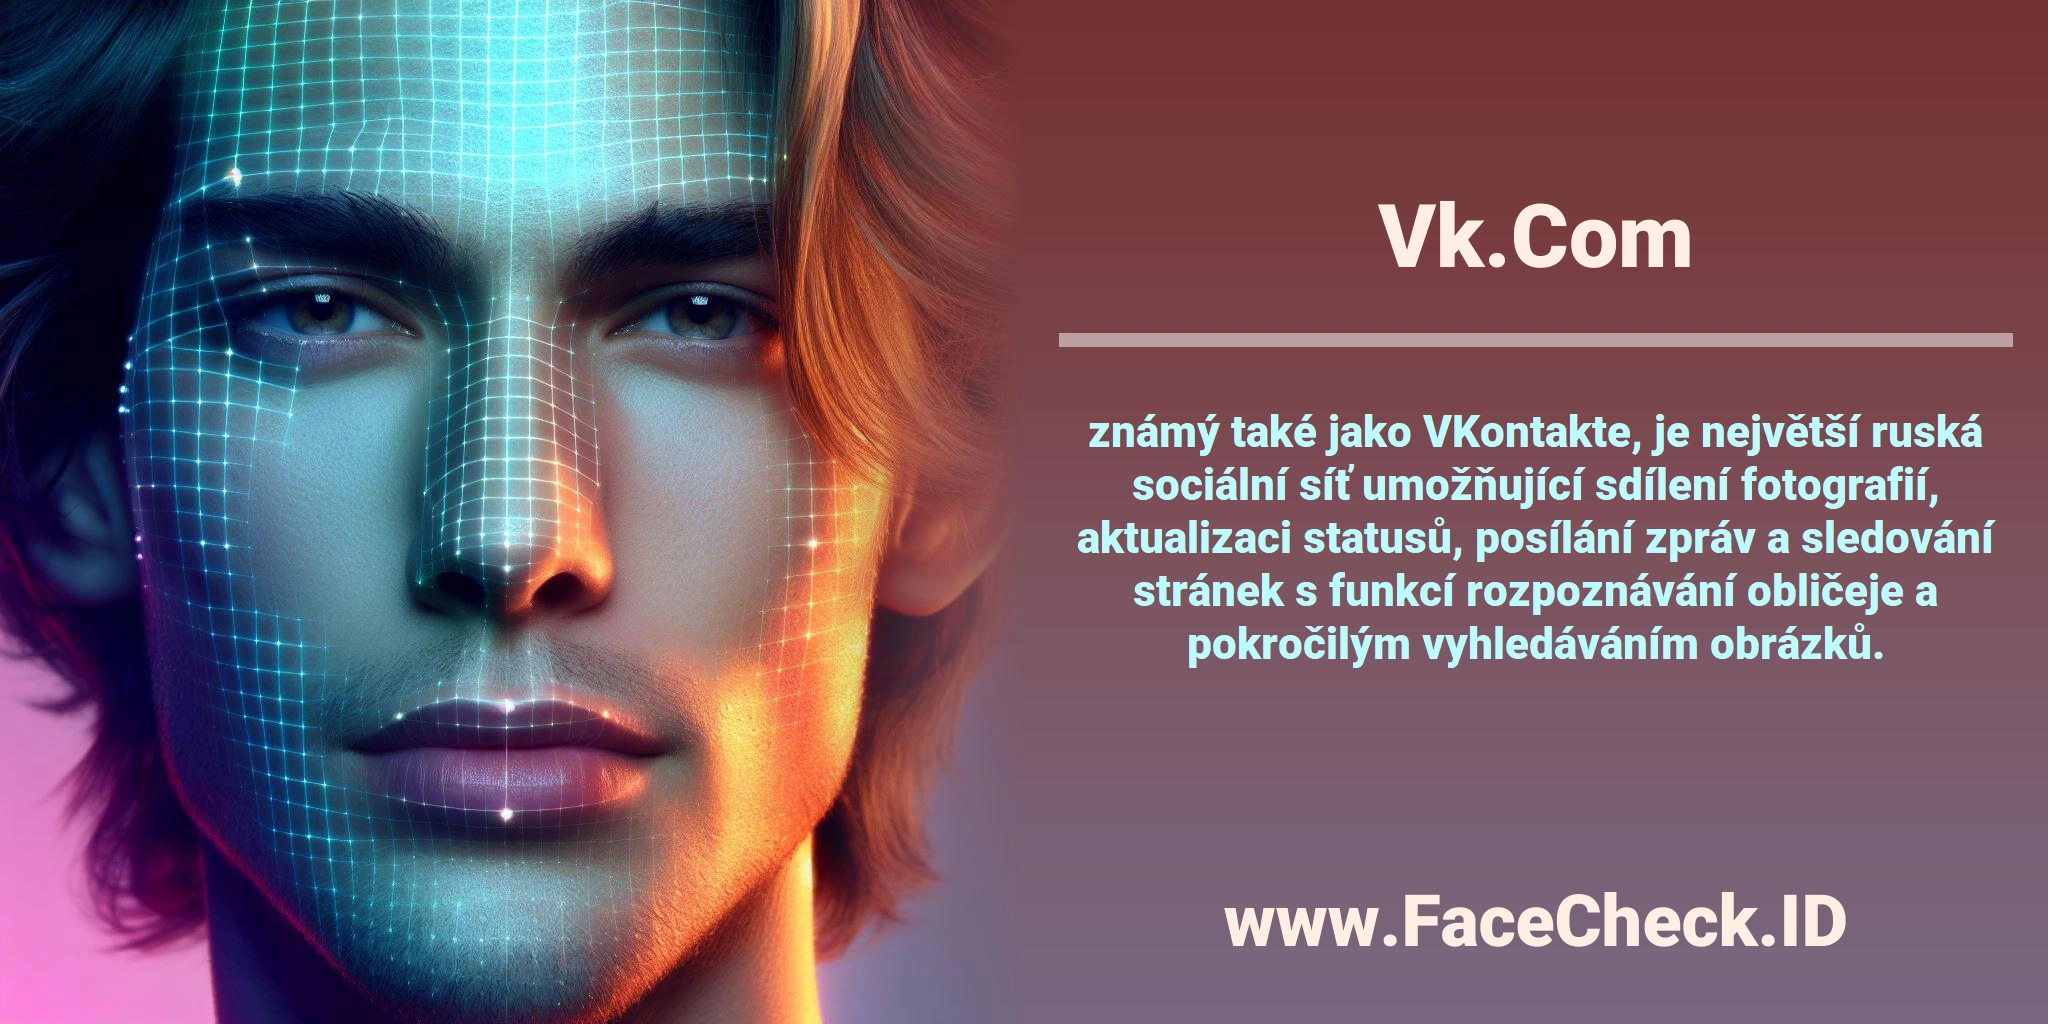 <b>Vk.Com</b> známý také jako VKontakte, je největší ruská sociální síť umožňující sdílení fotografií, aktualizaci statusů, posílání zpráv a sledování stránek s funkcí rozpoznávání obličeje a pokročilým vyhledáváním obrázků.